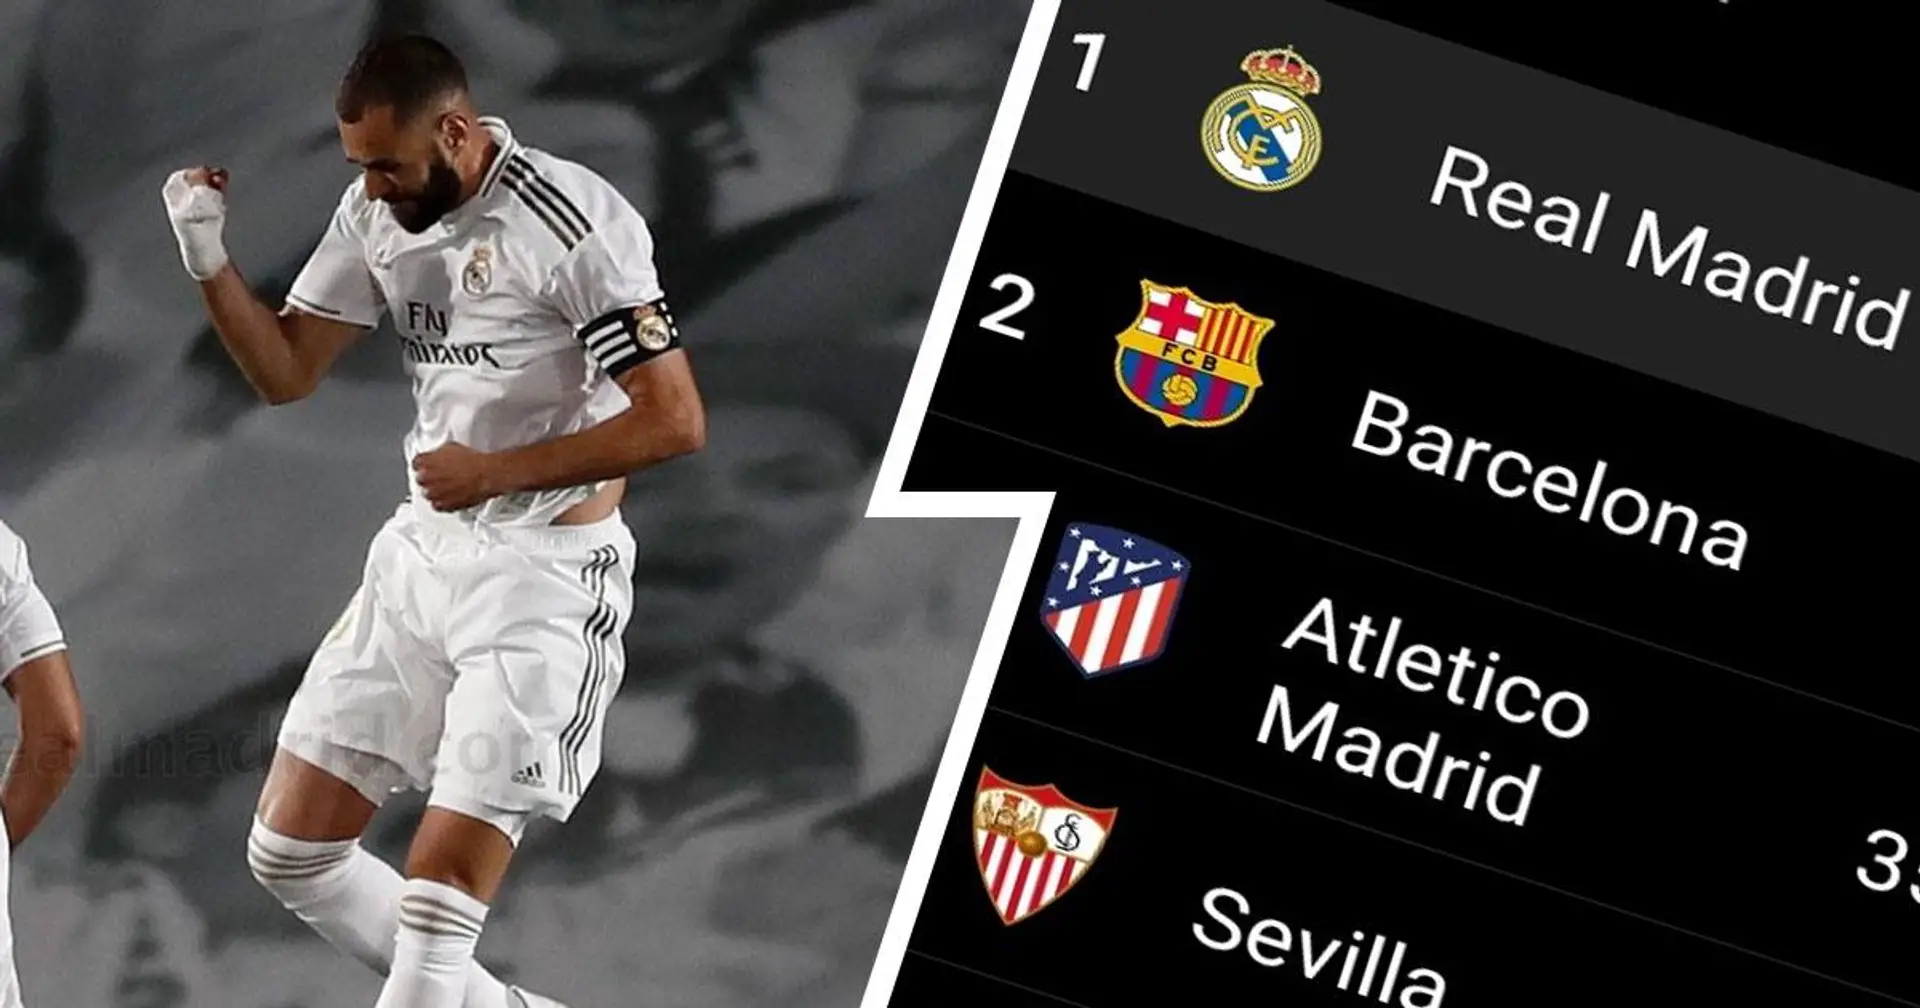 3 finales restantes: le Real Madrid et Barcelone entrent dans la dernière ligne droite